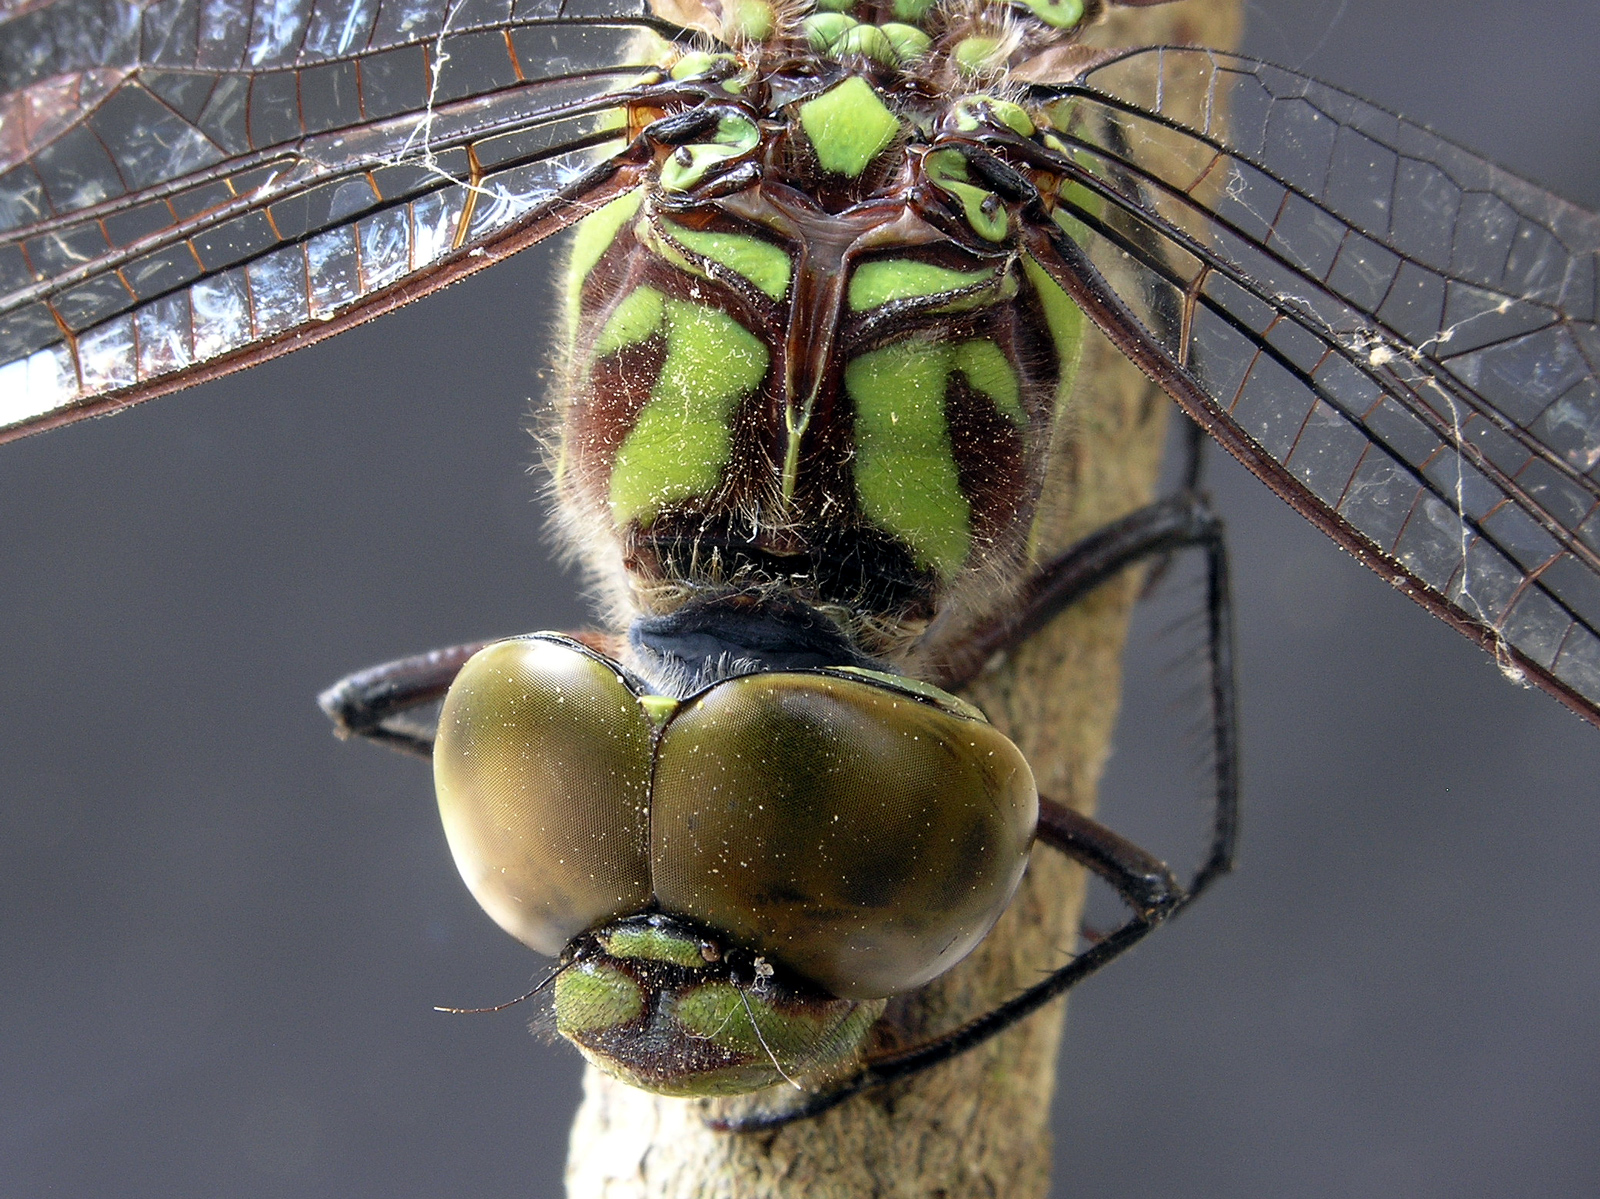 Dragonfly macro photo